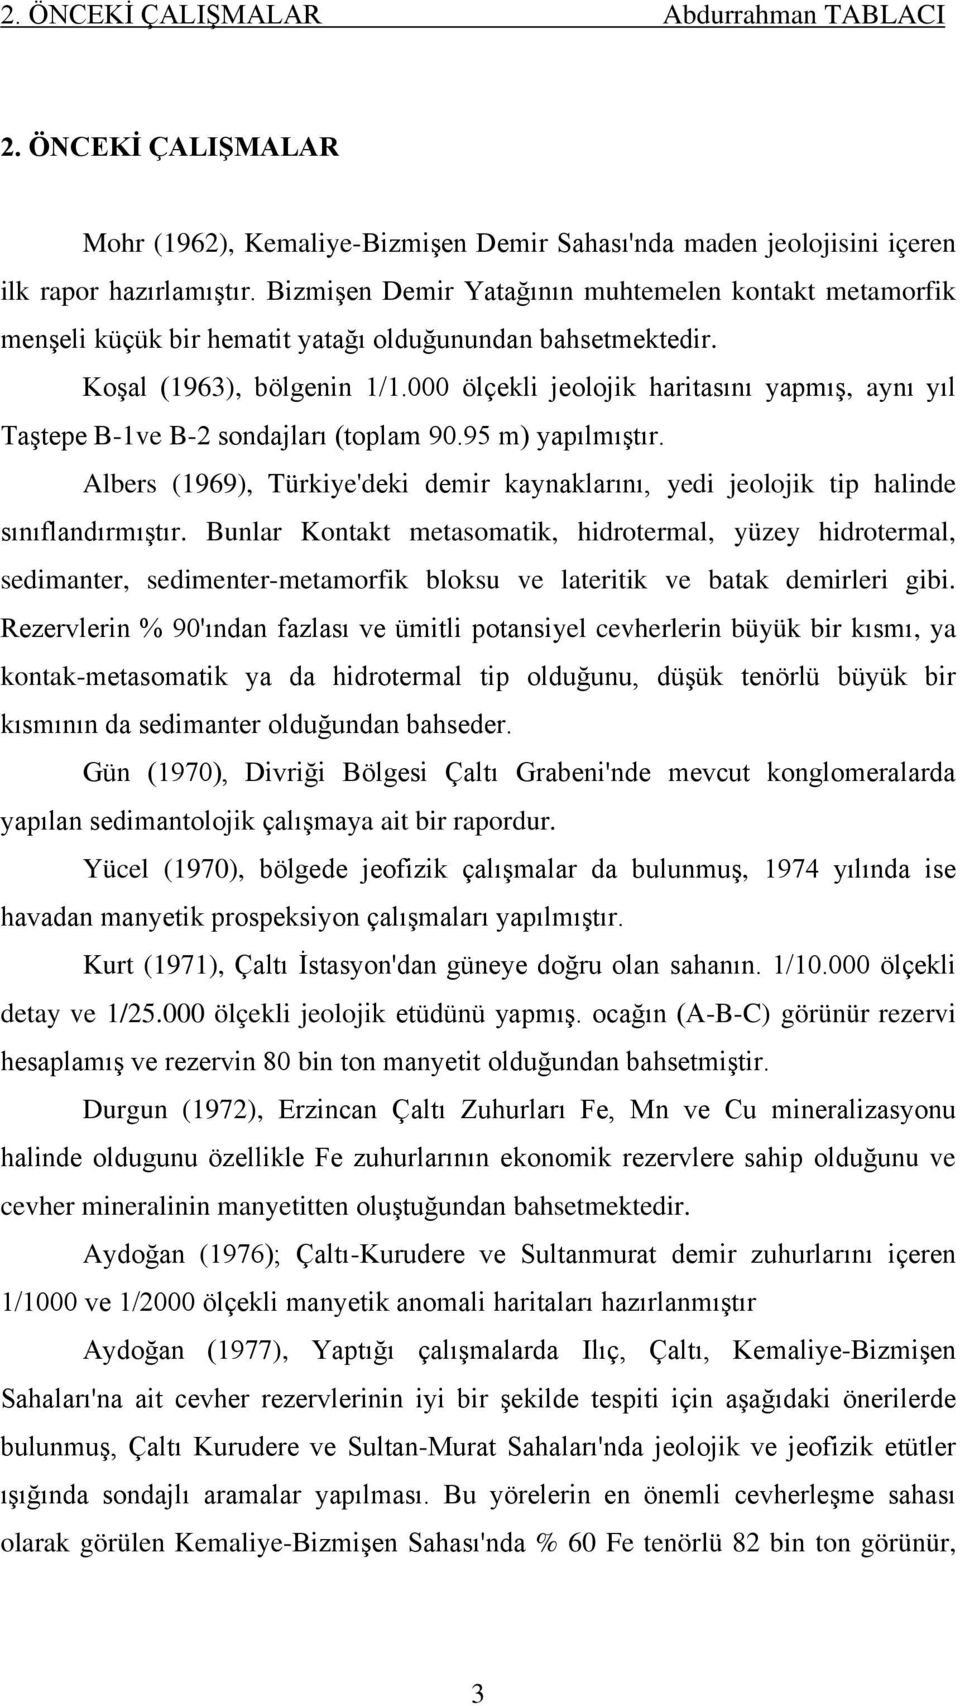 000 ölçekli jeolojik haritasını yapmış, aynı yıl Taştepe B-1ve B-2 sondajları (toplam 90.95 m) yapılmıştır. Albers (1969), Türkiye'deki demir kaynaklarını, yedi jeolojik tip halinde sınıflandırmıştır.